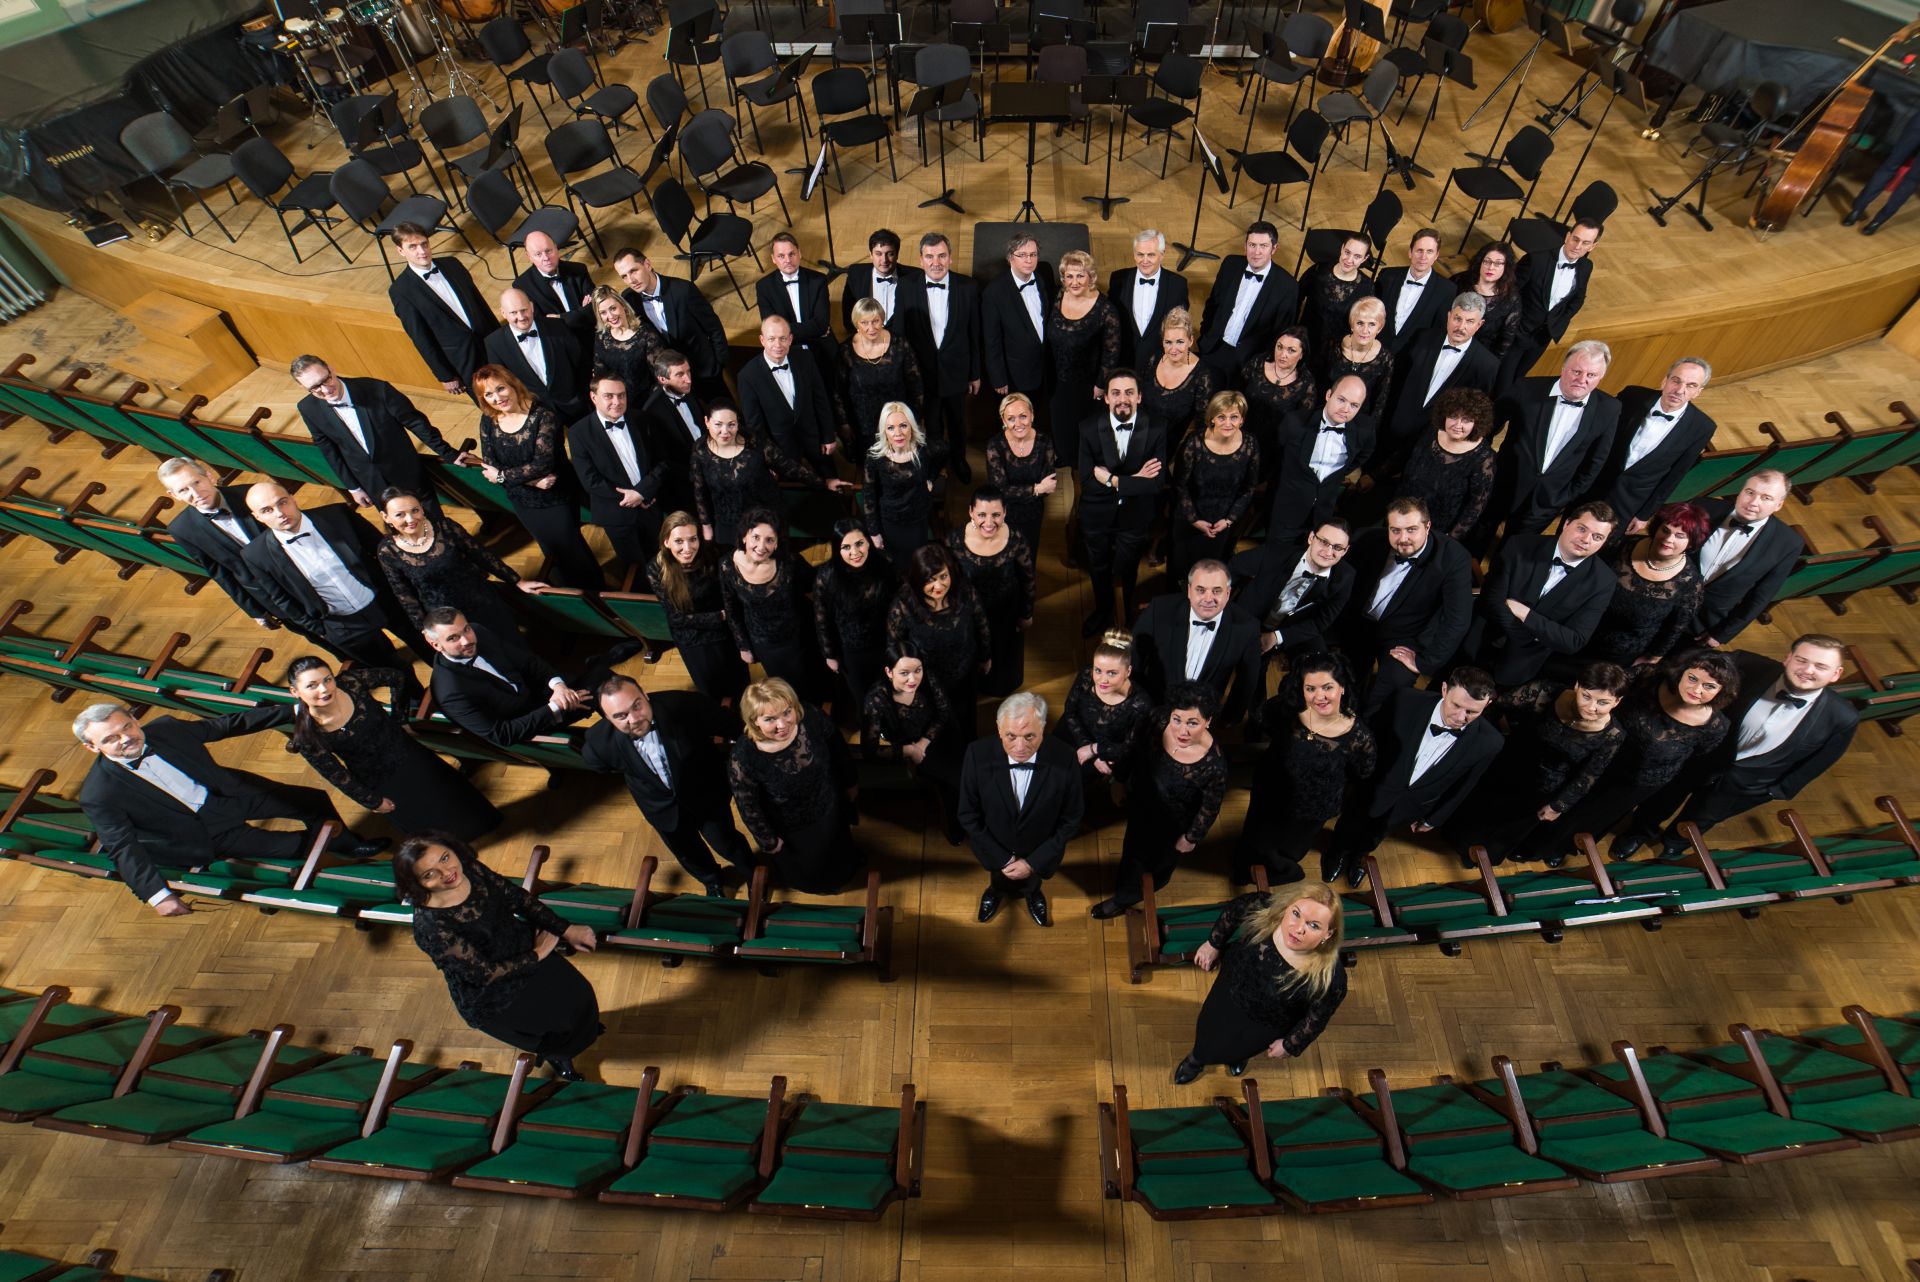 Kauno valstybinė filharmonija ieško Maestro Petro Bingelio darbų tęsėjo